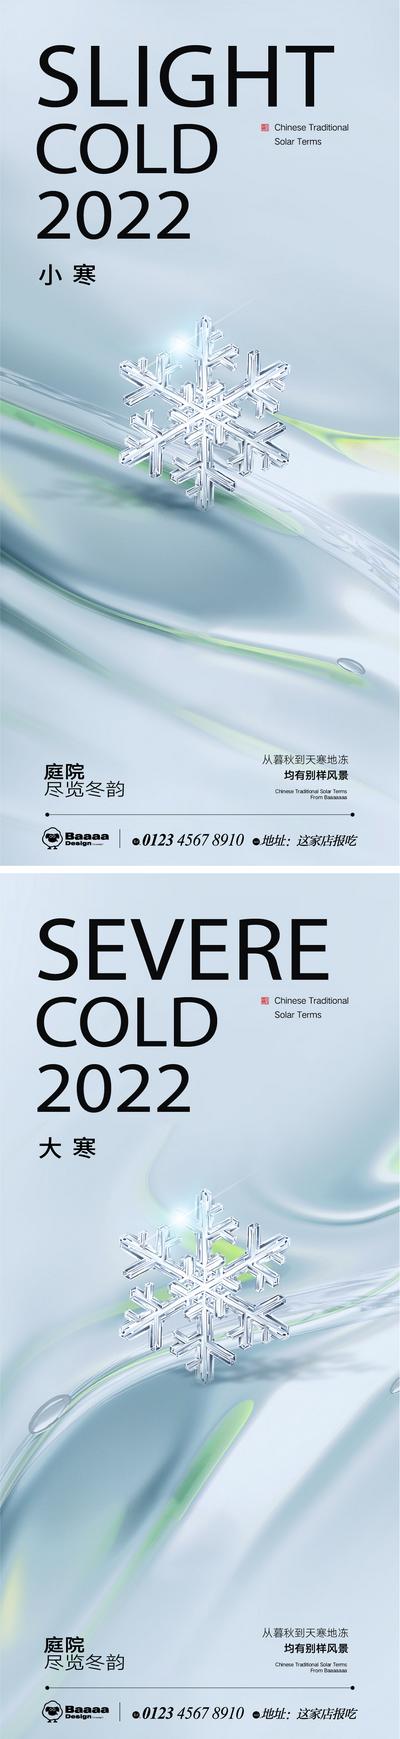 南门网 节气 系列 小寒 大寒 肌理 背景 纹理 大气 微信 刷屏 传统节日